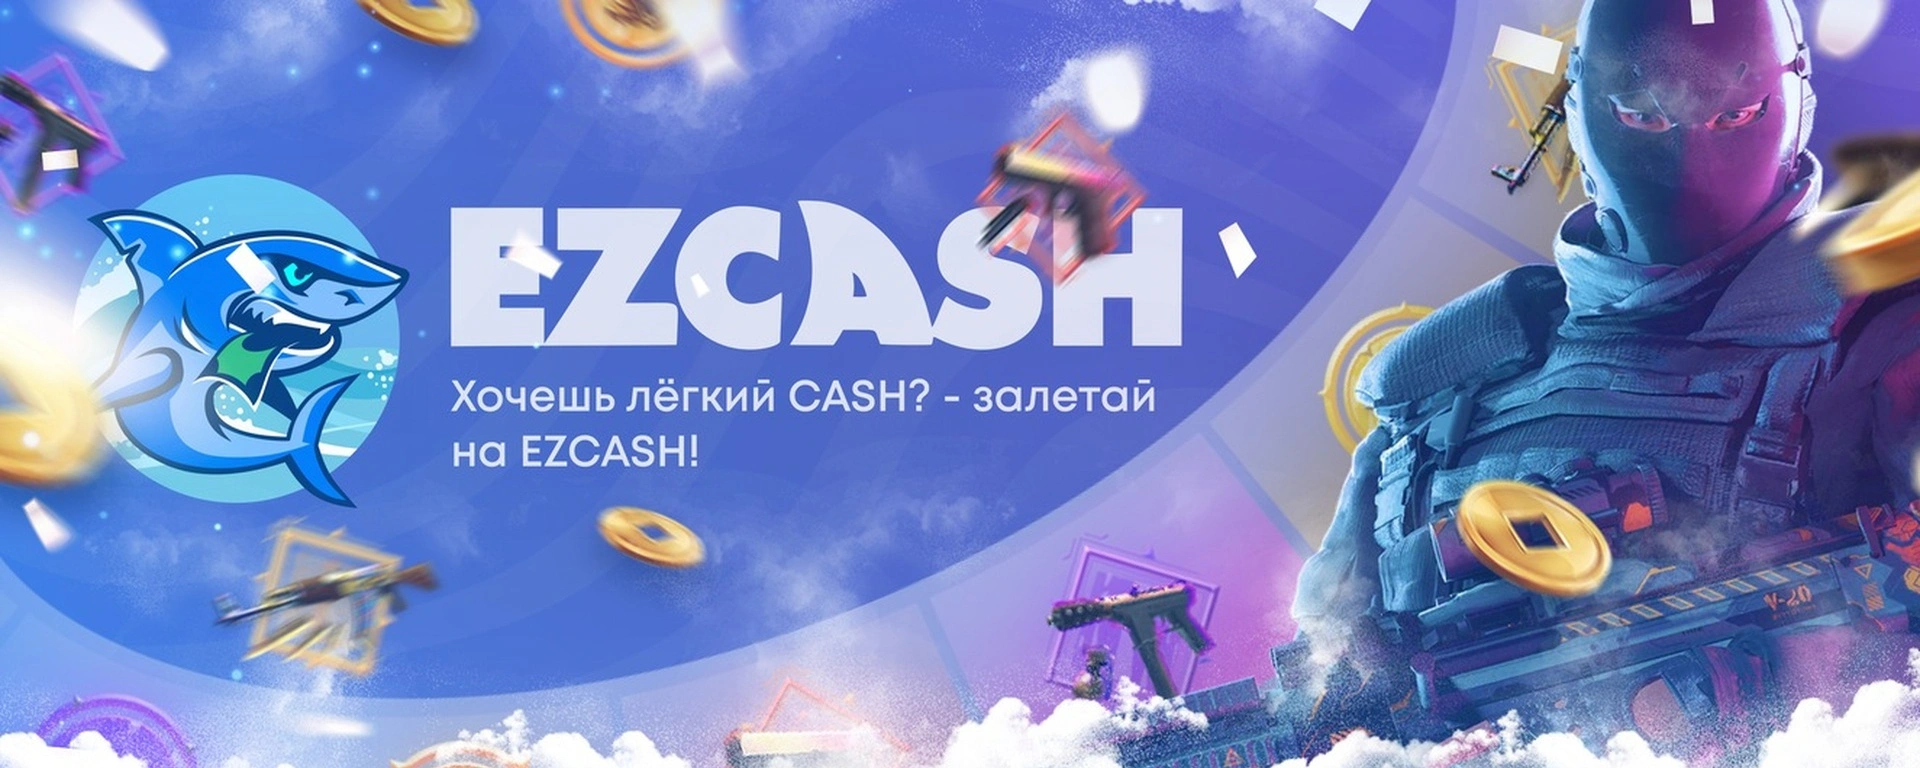 Ezcash Casino – официальный сайт